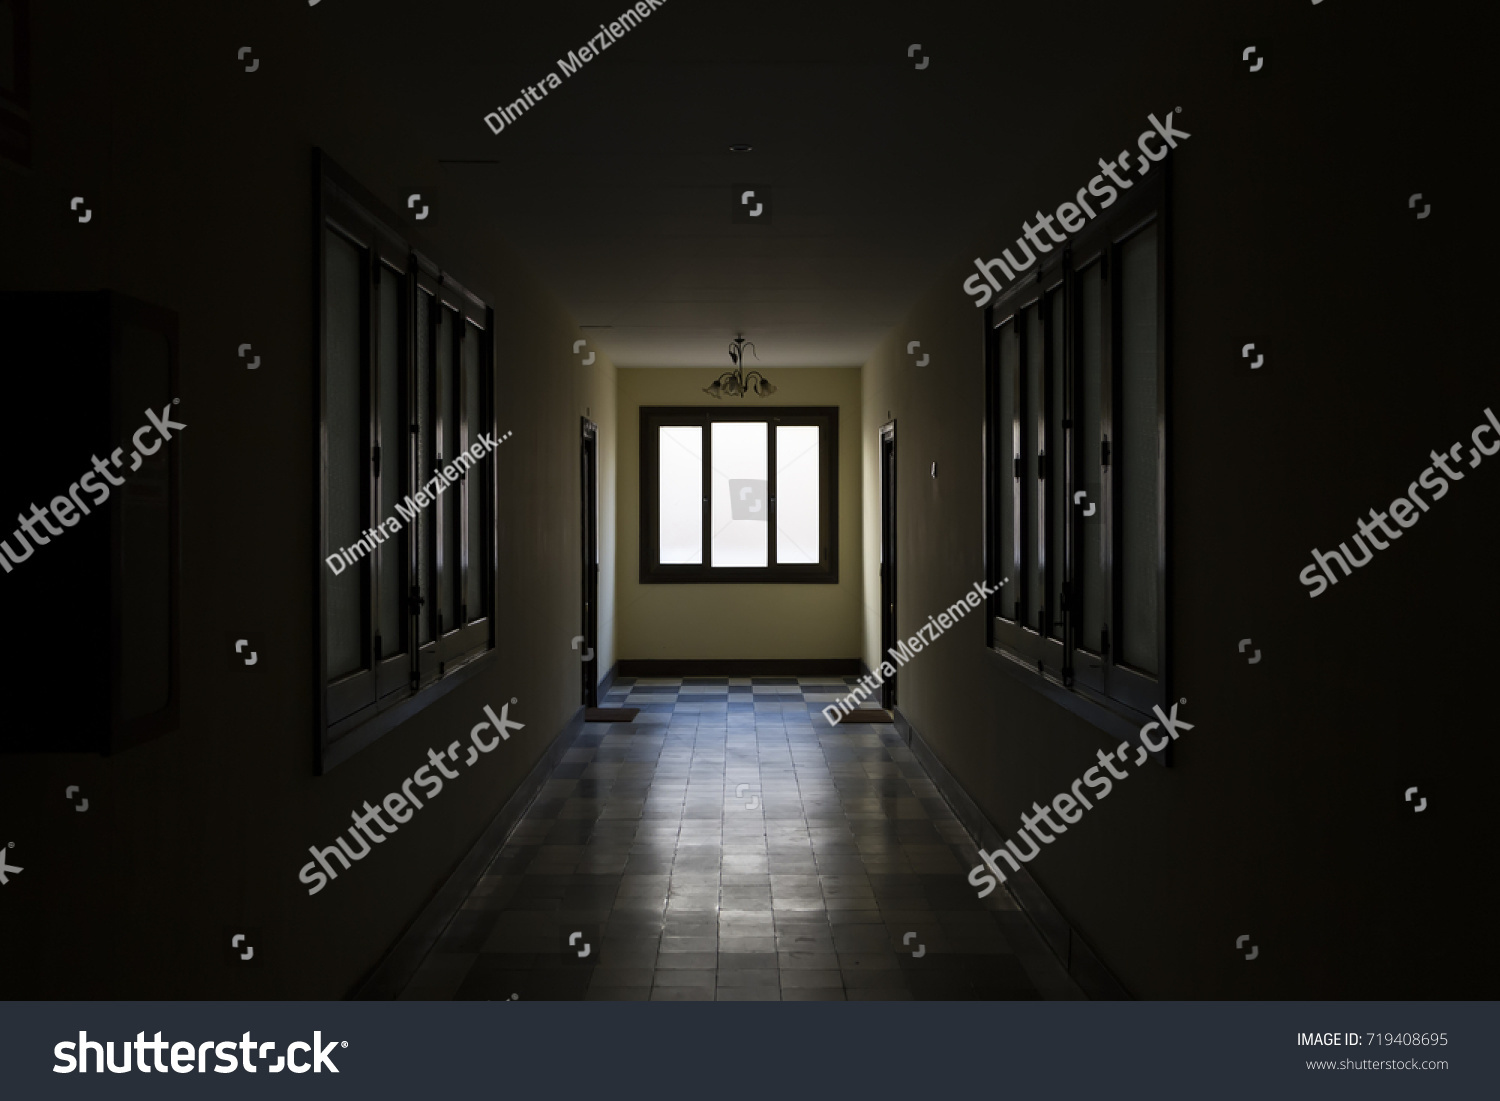 Light through window at dark corridor. Soft focus #719408695